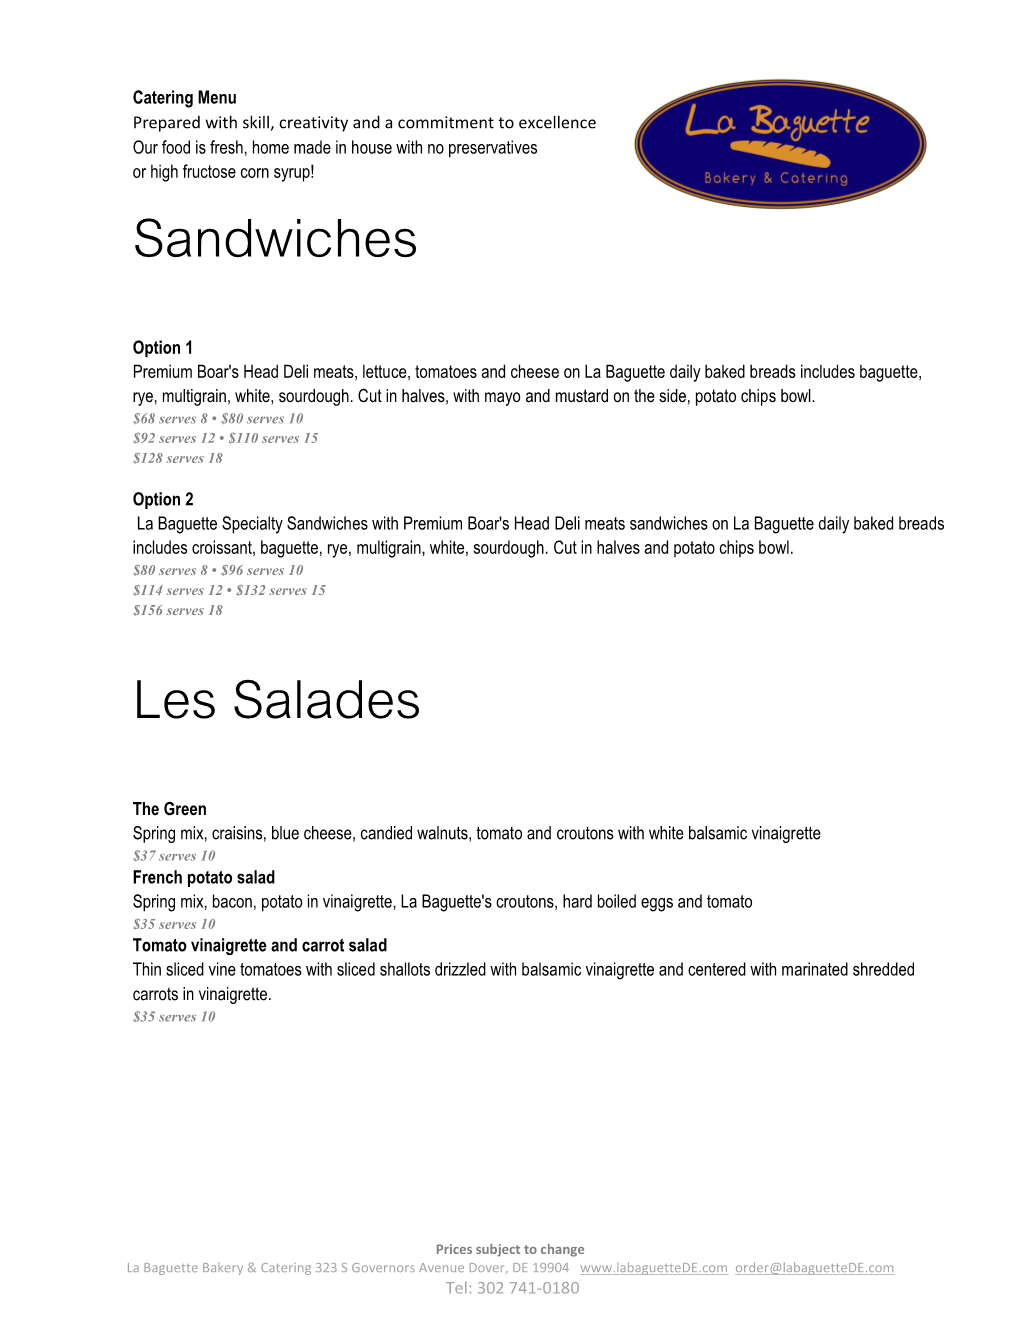 Sandwiches Les Salades